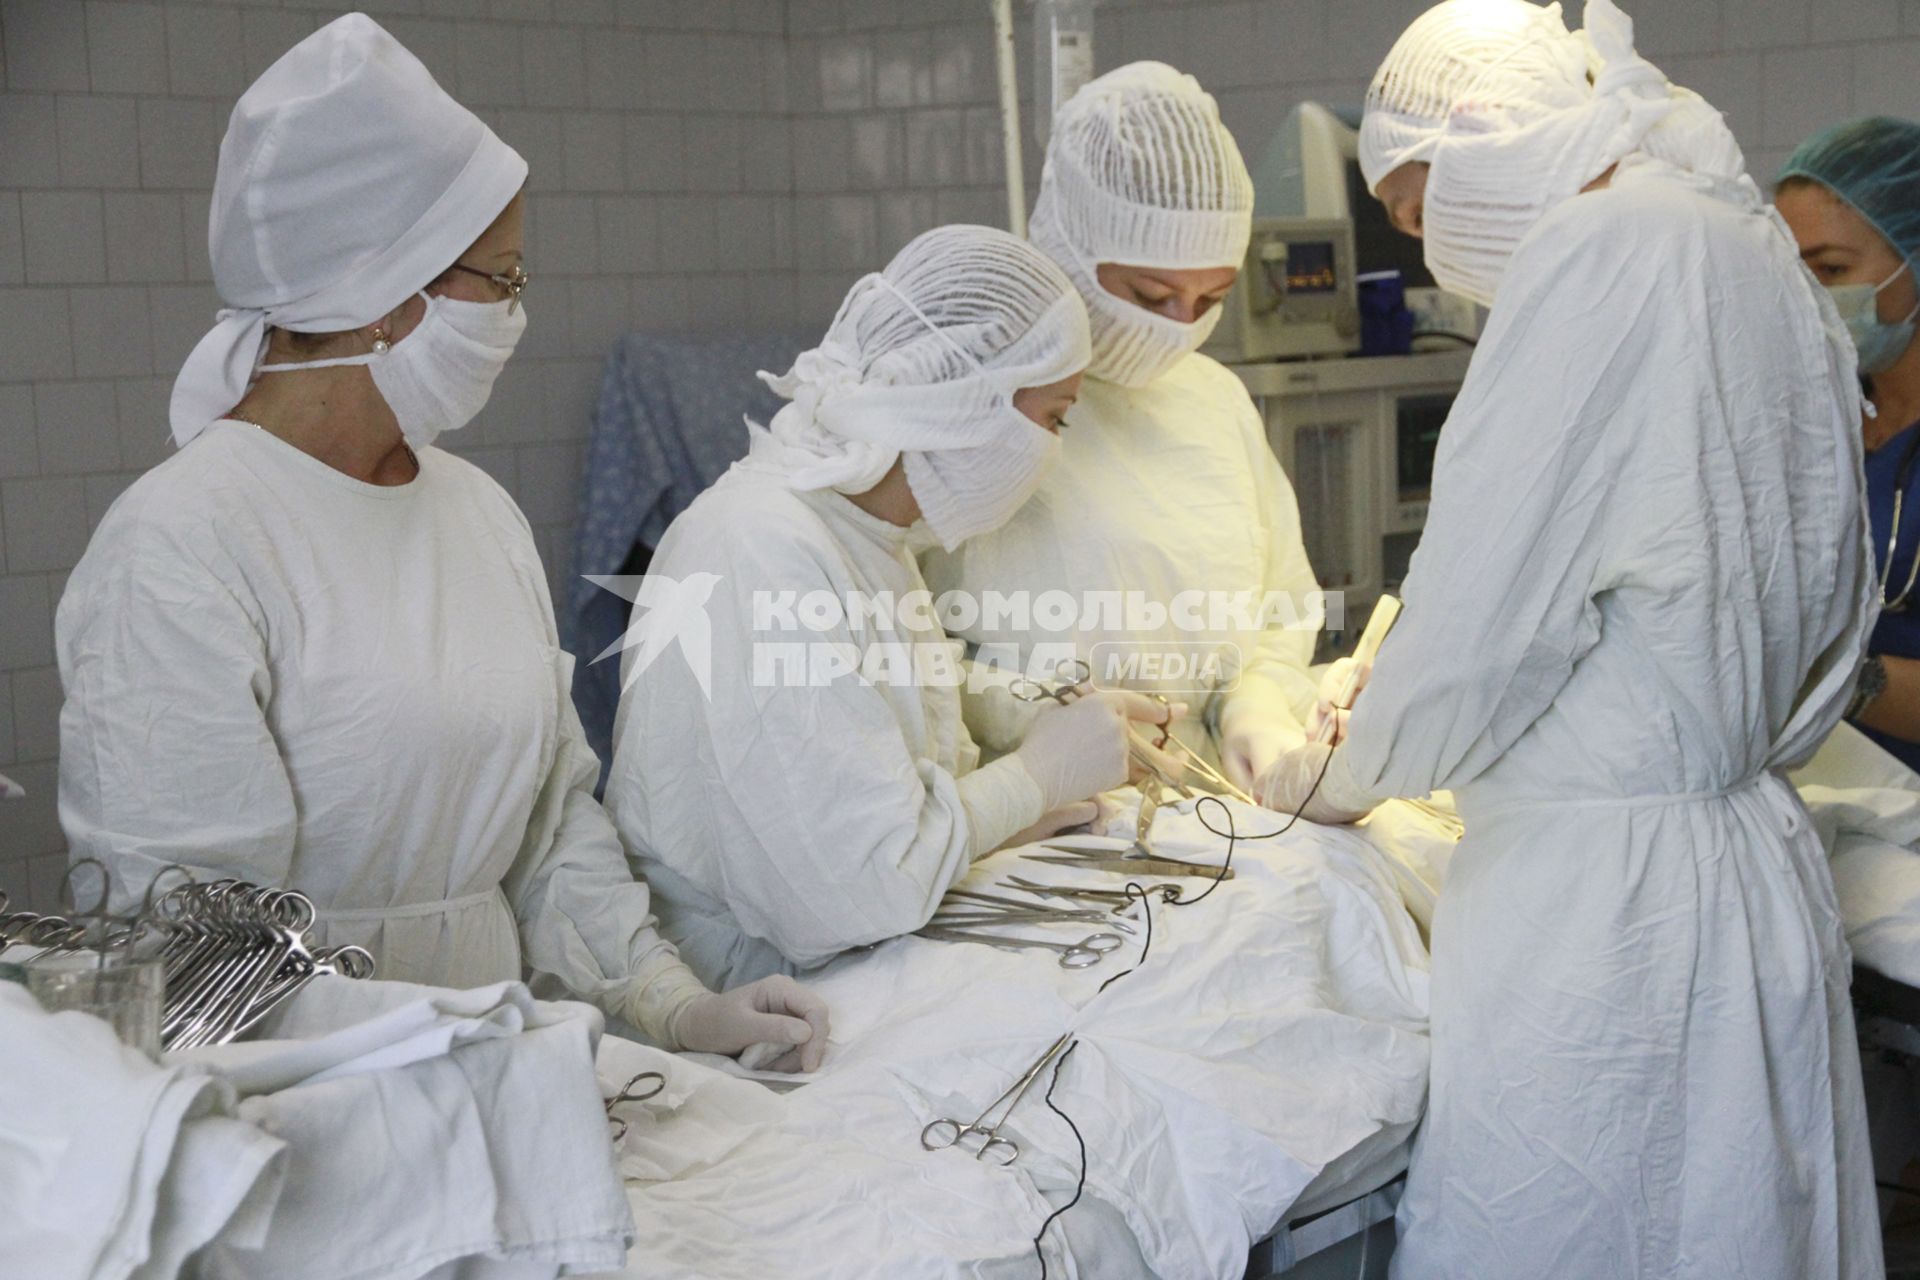 Барнаул. В отделении гинекологии больницы скорой помощи идет хирургическая операция.